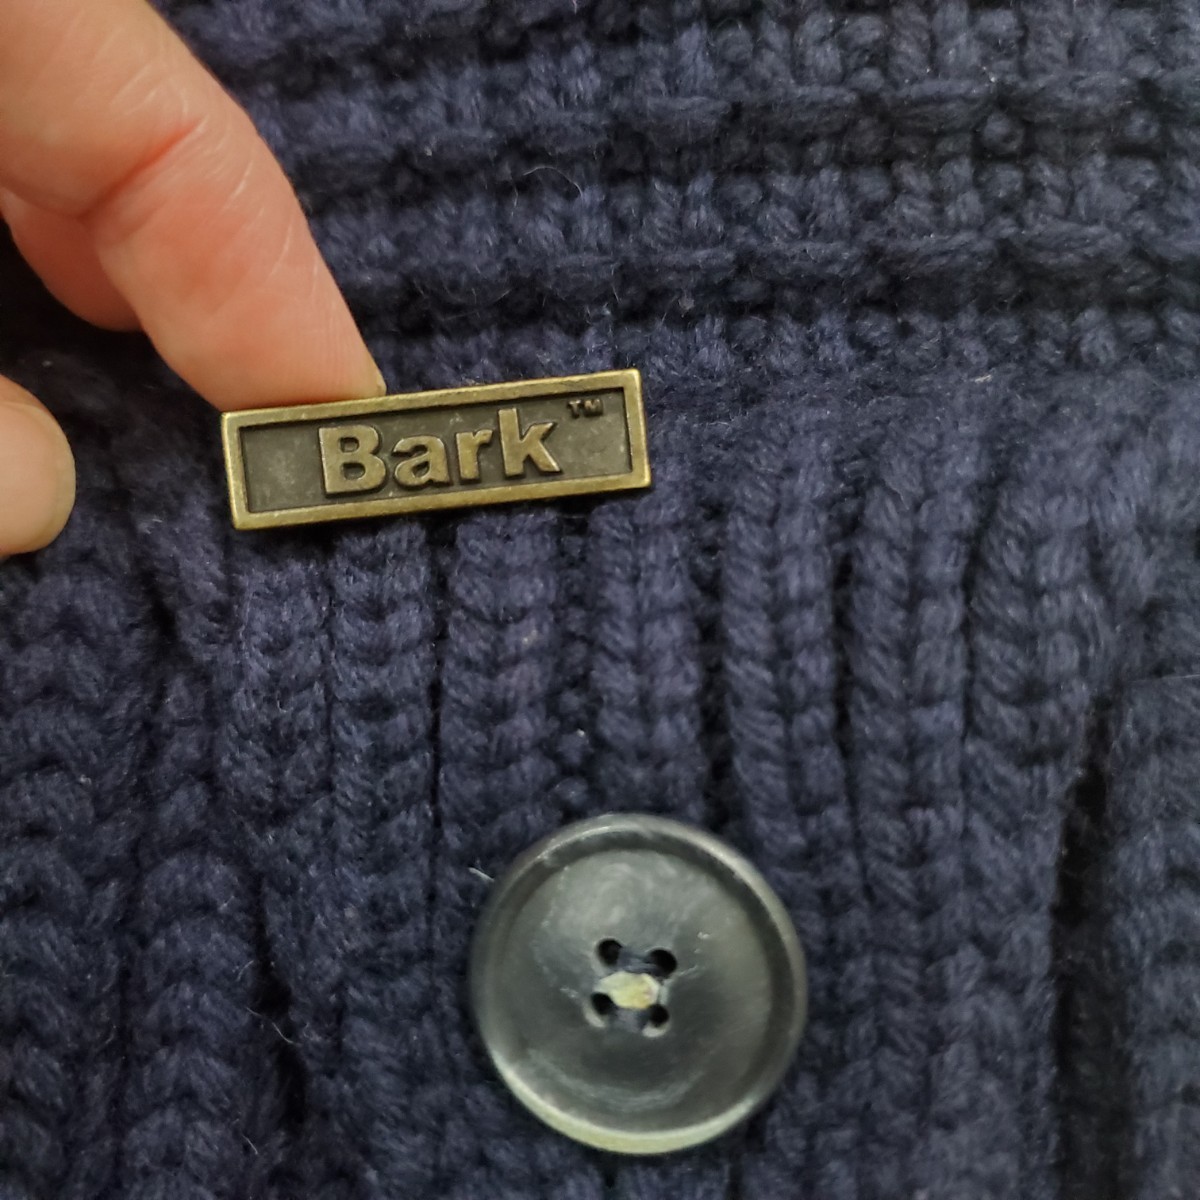 BARK Burke вязаный полупальто "даффл коут" Италия производства темно-синий размер S